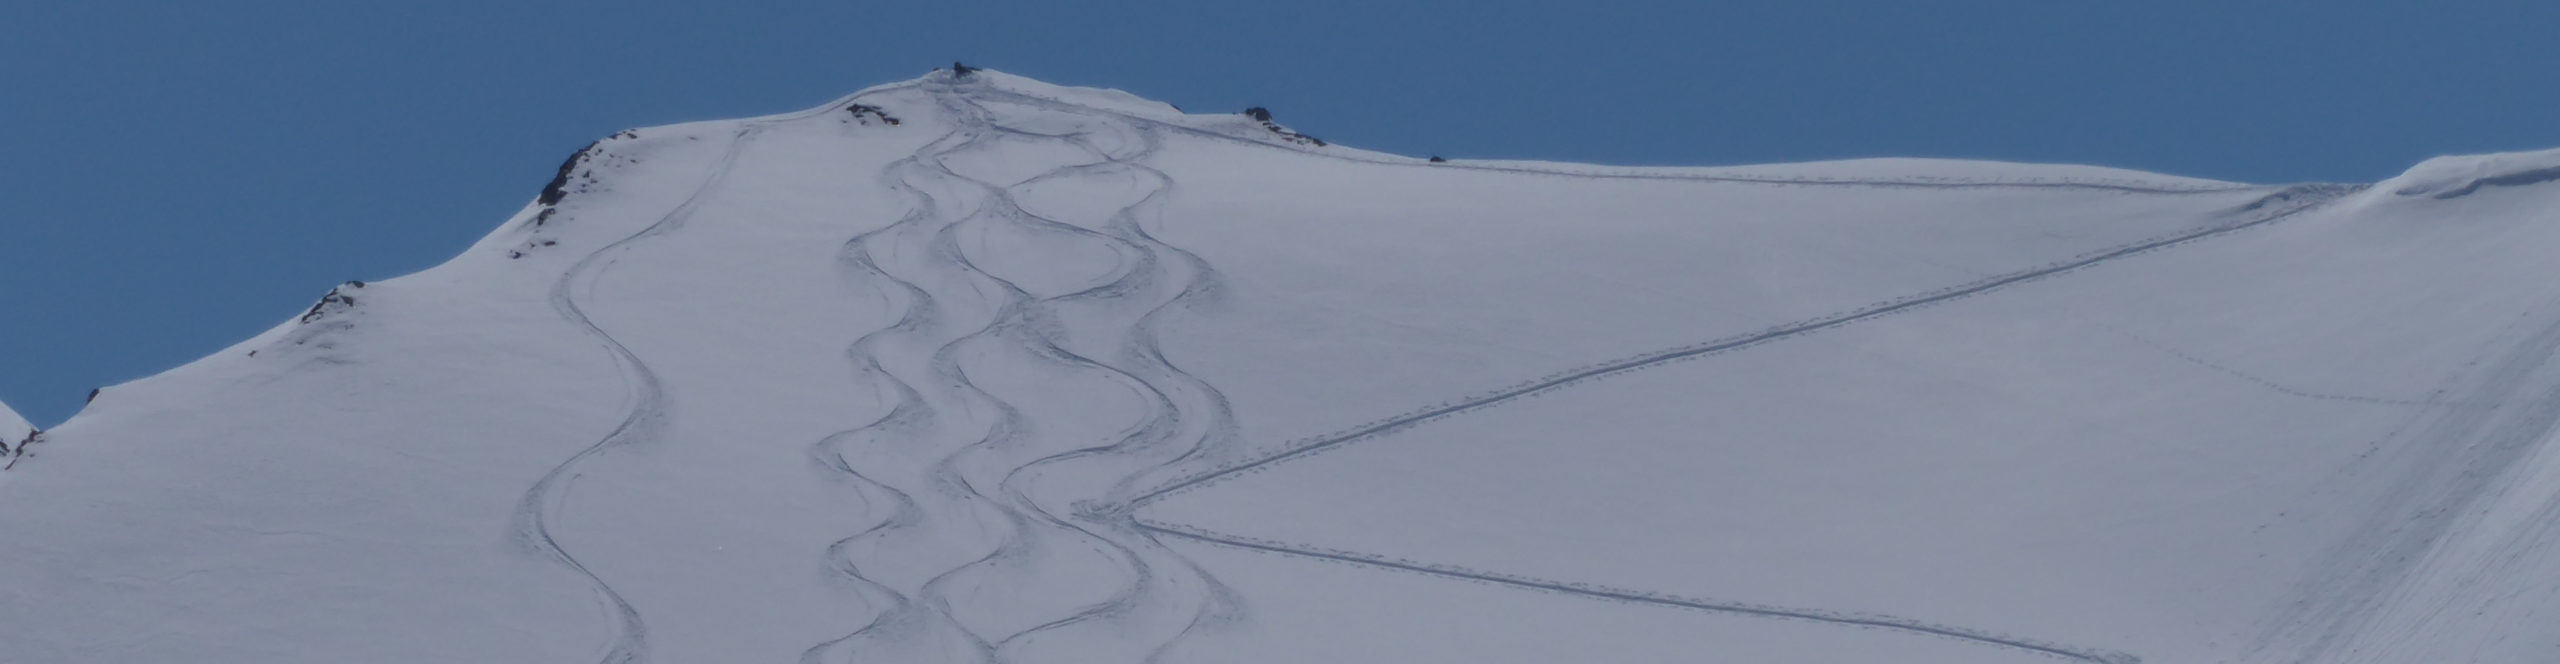 ZILLERTAL – KALTENBACH- SchneeSpaßFeiertag – SkiTagesreise mit früher Ankunft 